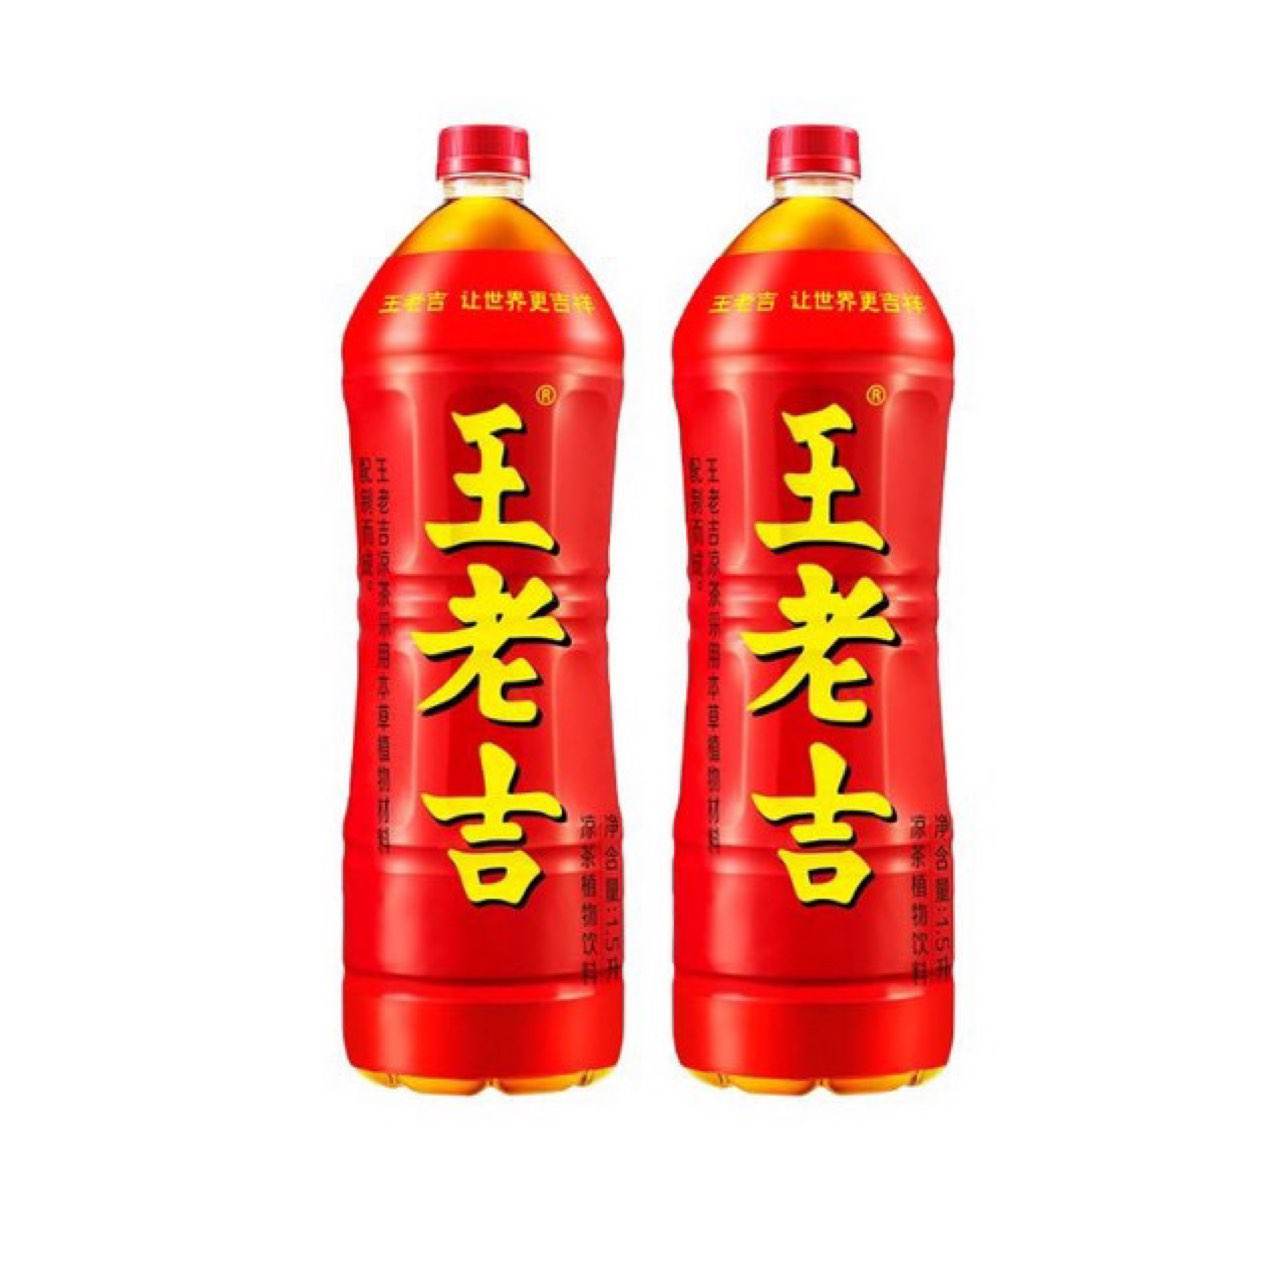 王老吉 凉茶植物饮料1.5L*2瓶装 9.9元